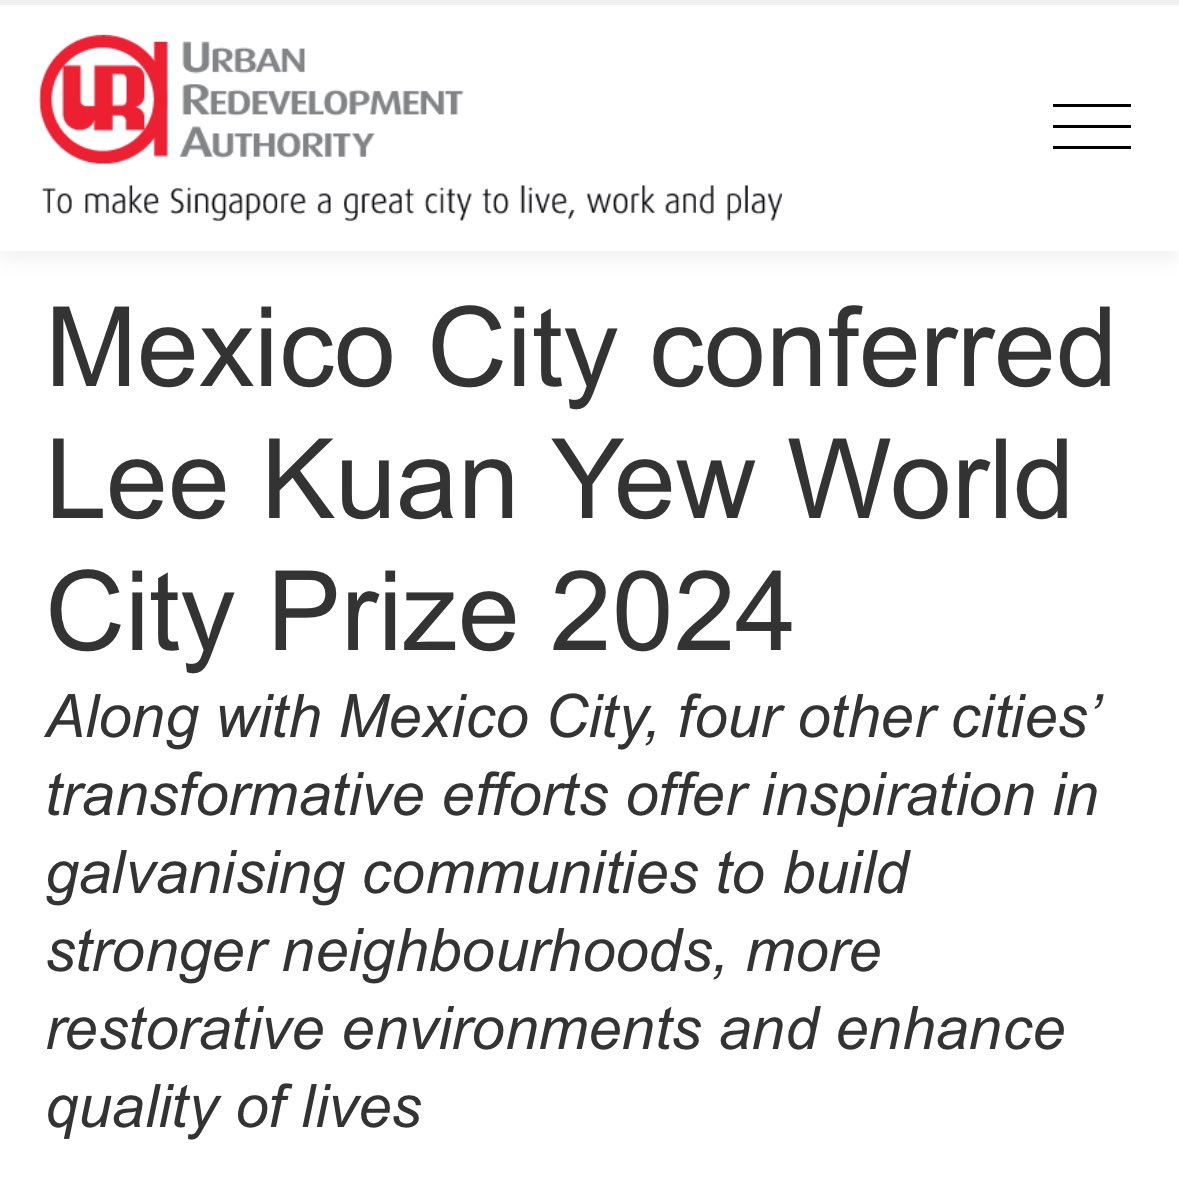 La Ciudad de México gana el Premio Ciudad Mundial: “Lee Kuan Yew 2024”, por la transformación realizada durante los últimos 5 años  en la gestion de Claudia Sheinbaum. Educación, regeneración urbana, sostenibilidad ambiental, el transporte y la transformación digital fueron